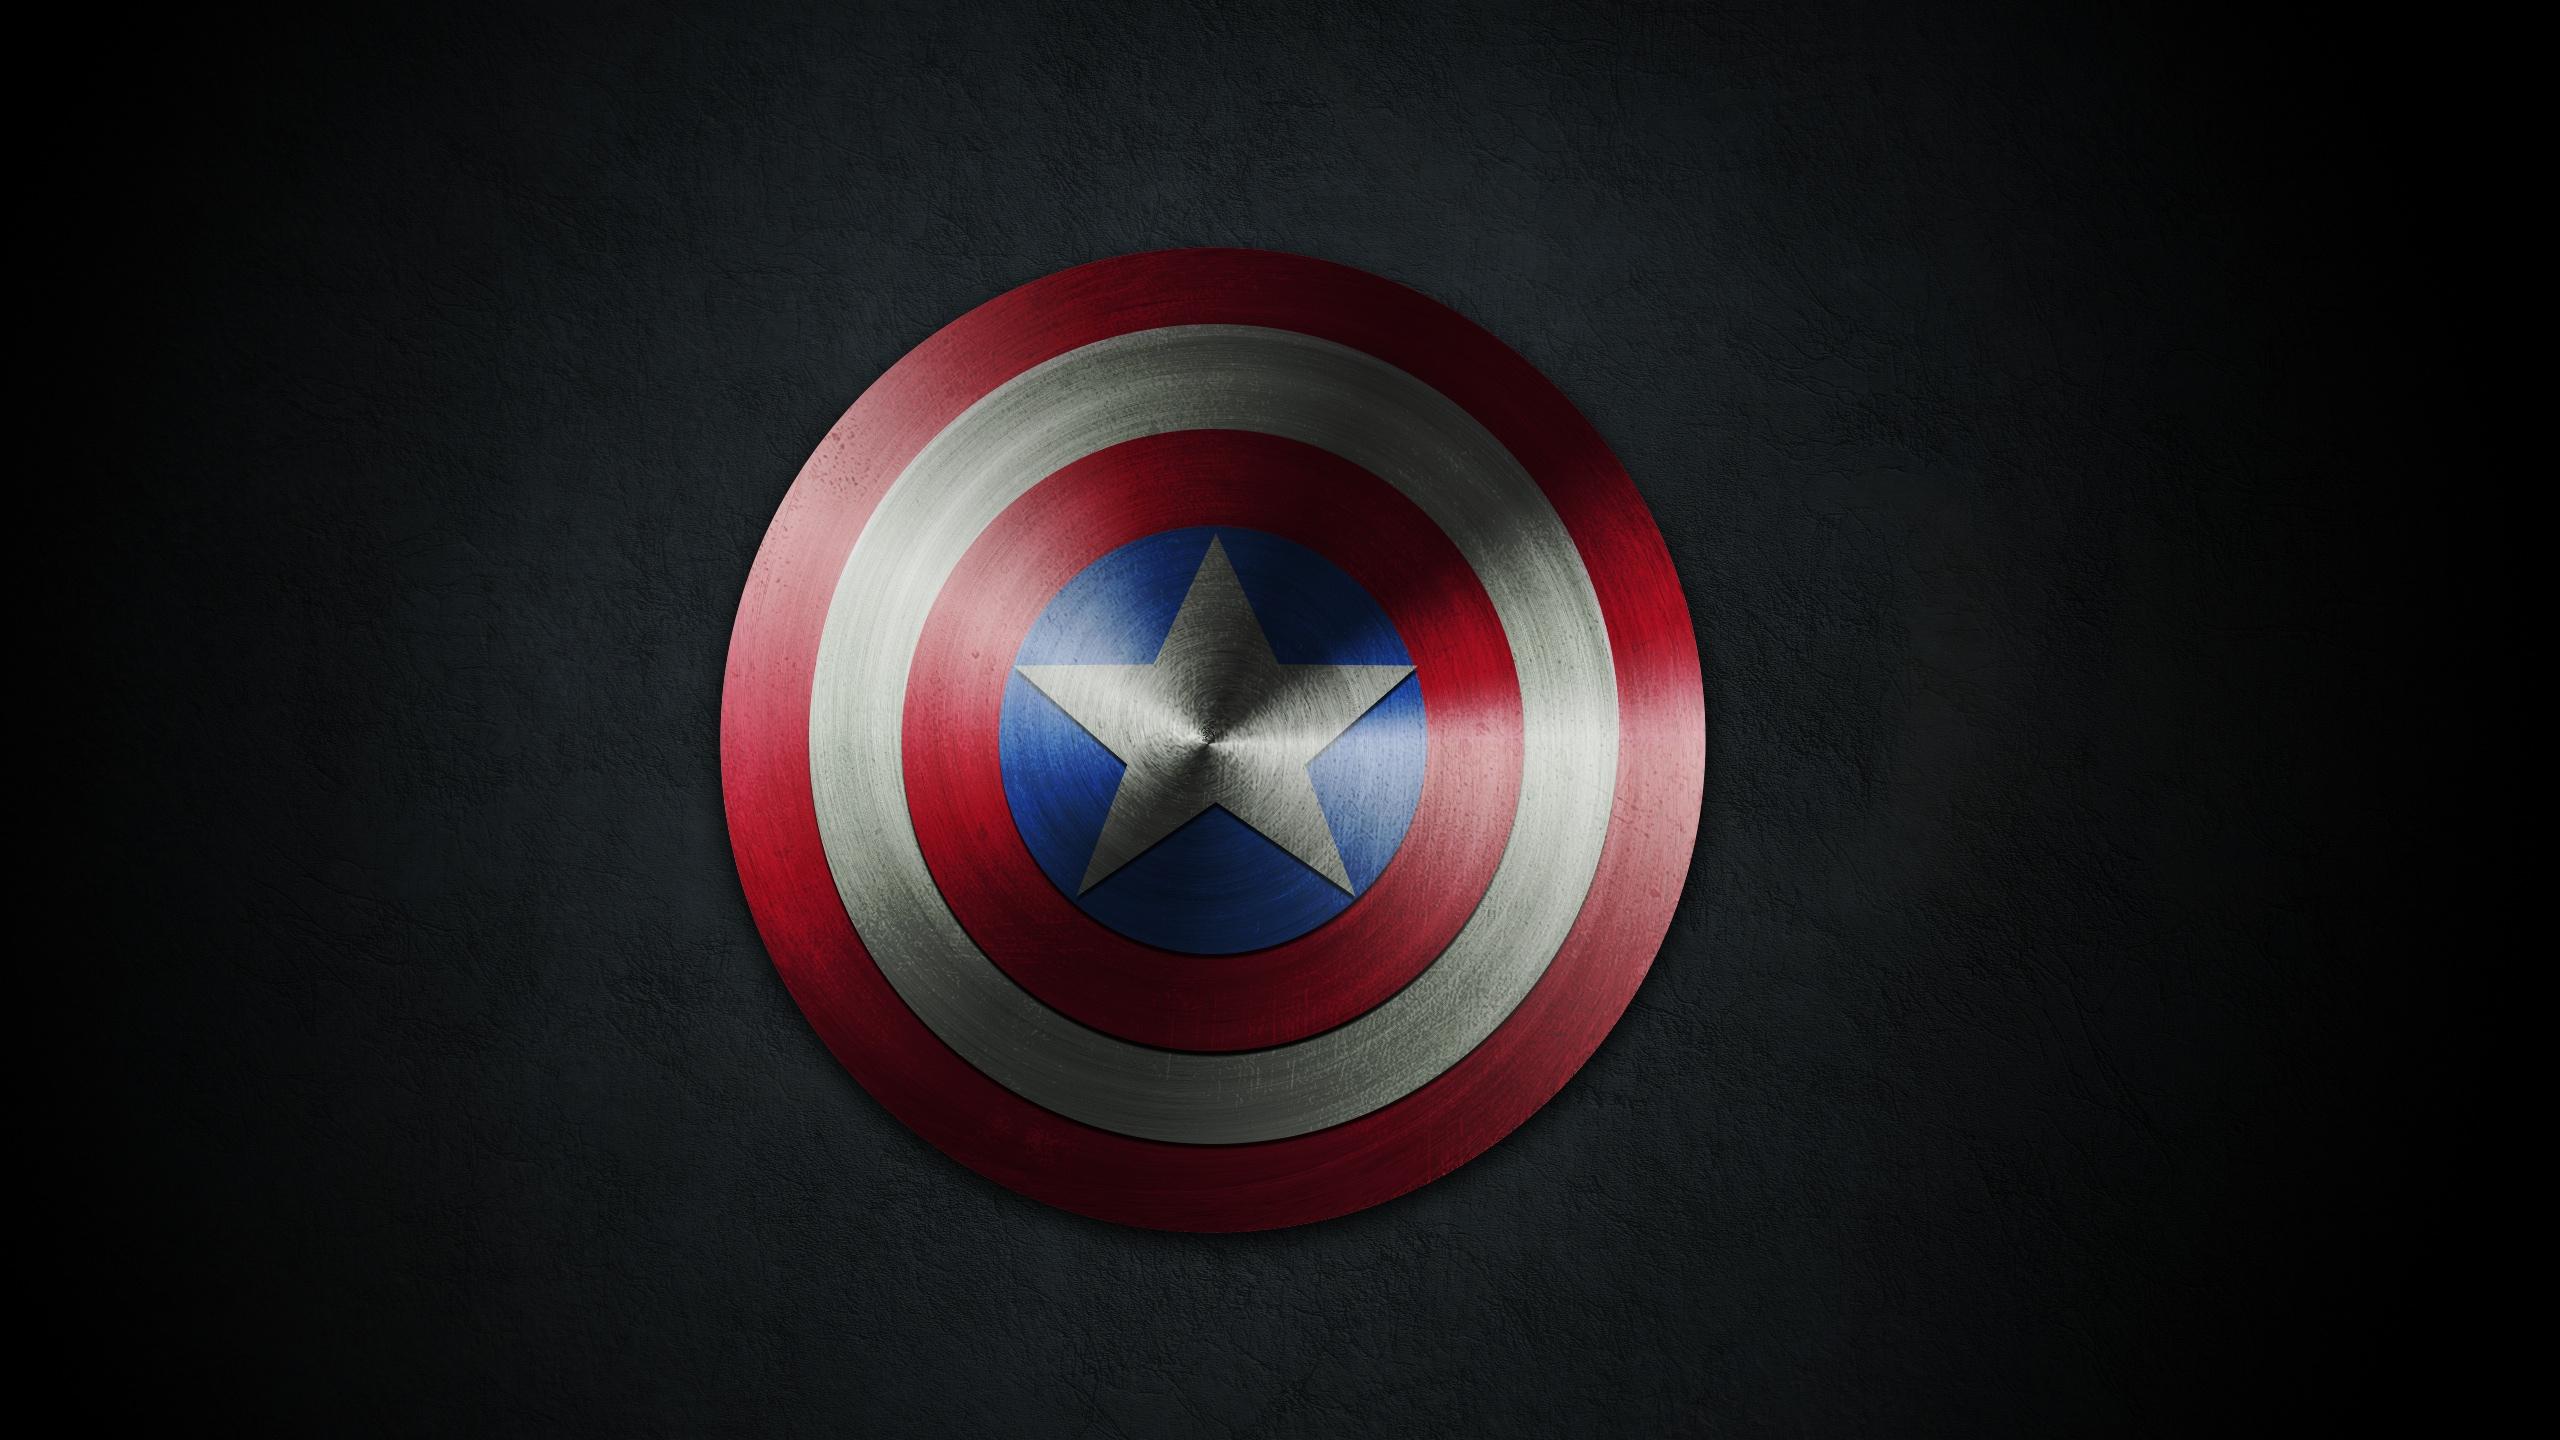 2560 x 1440 · jpeg - Captain America Logo Wallpaper - WallpaperSafari